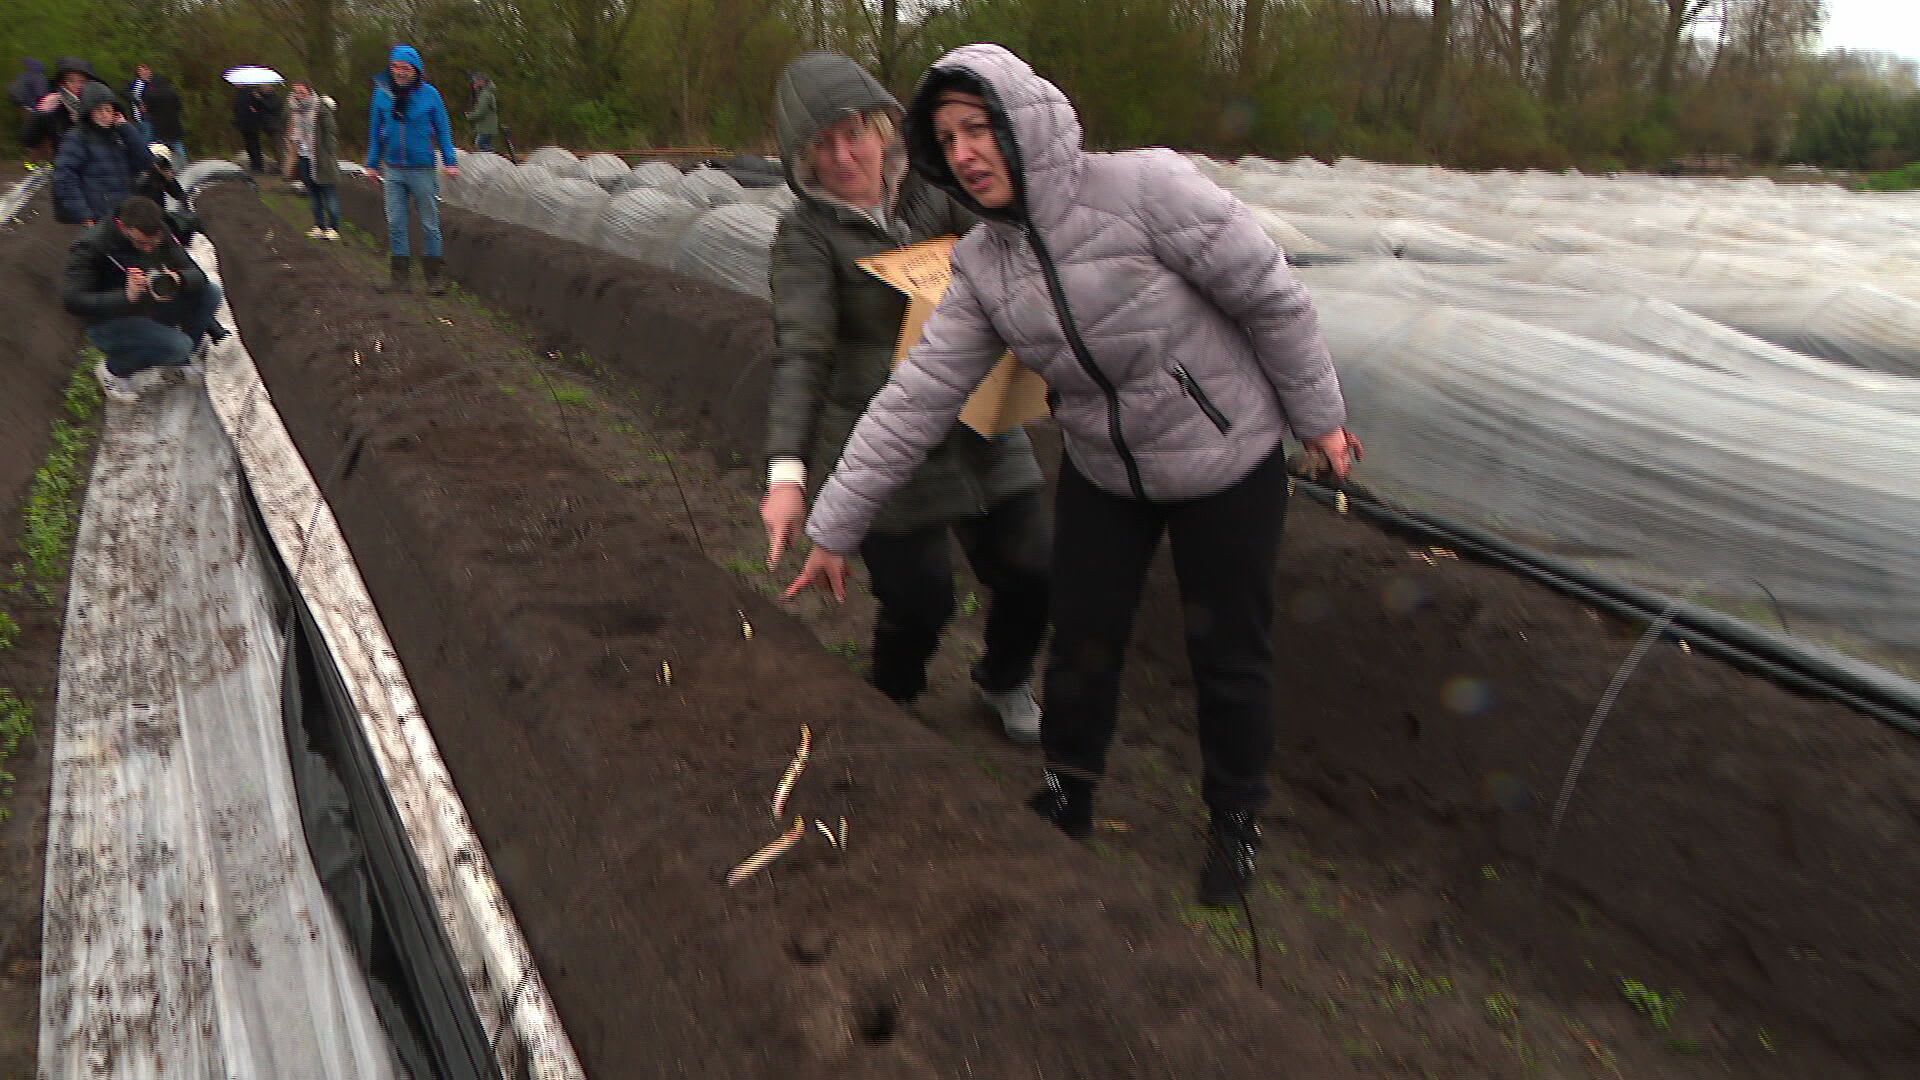 Oekraïense vluchtelingen steken eerste asperges in Brabant: 'Ik ben trots!'